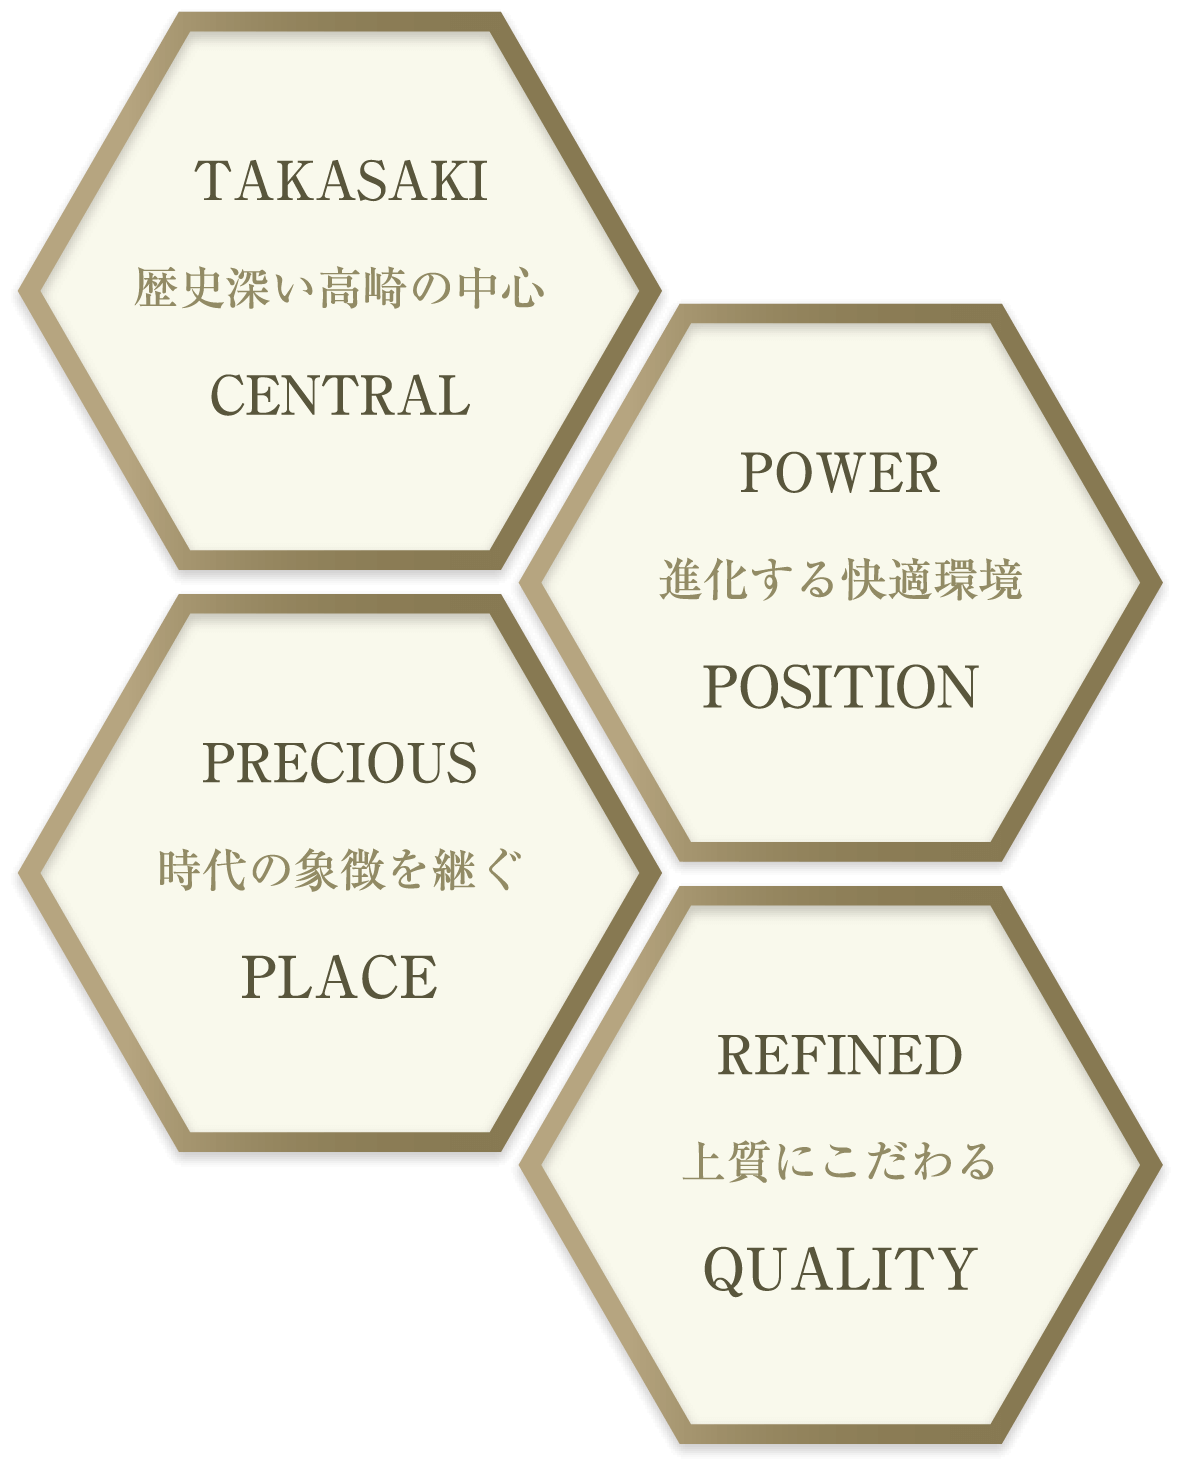 TAKASAKI 歴史深い高崎の中心 CENTRAL PRECIOUS 時代の象徴を継ぐ PLACE POWER 進化する快適環境 POSITION REFINED 上質にこだわる QUALITY